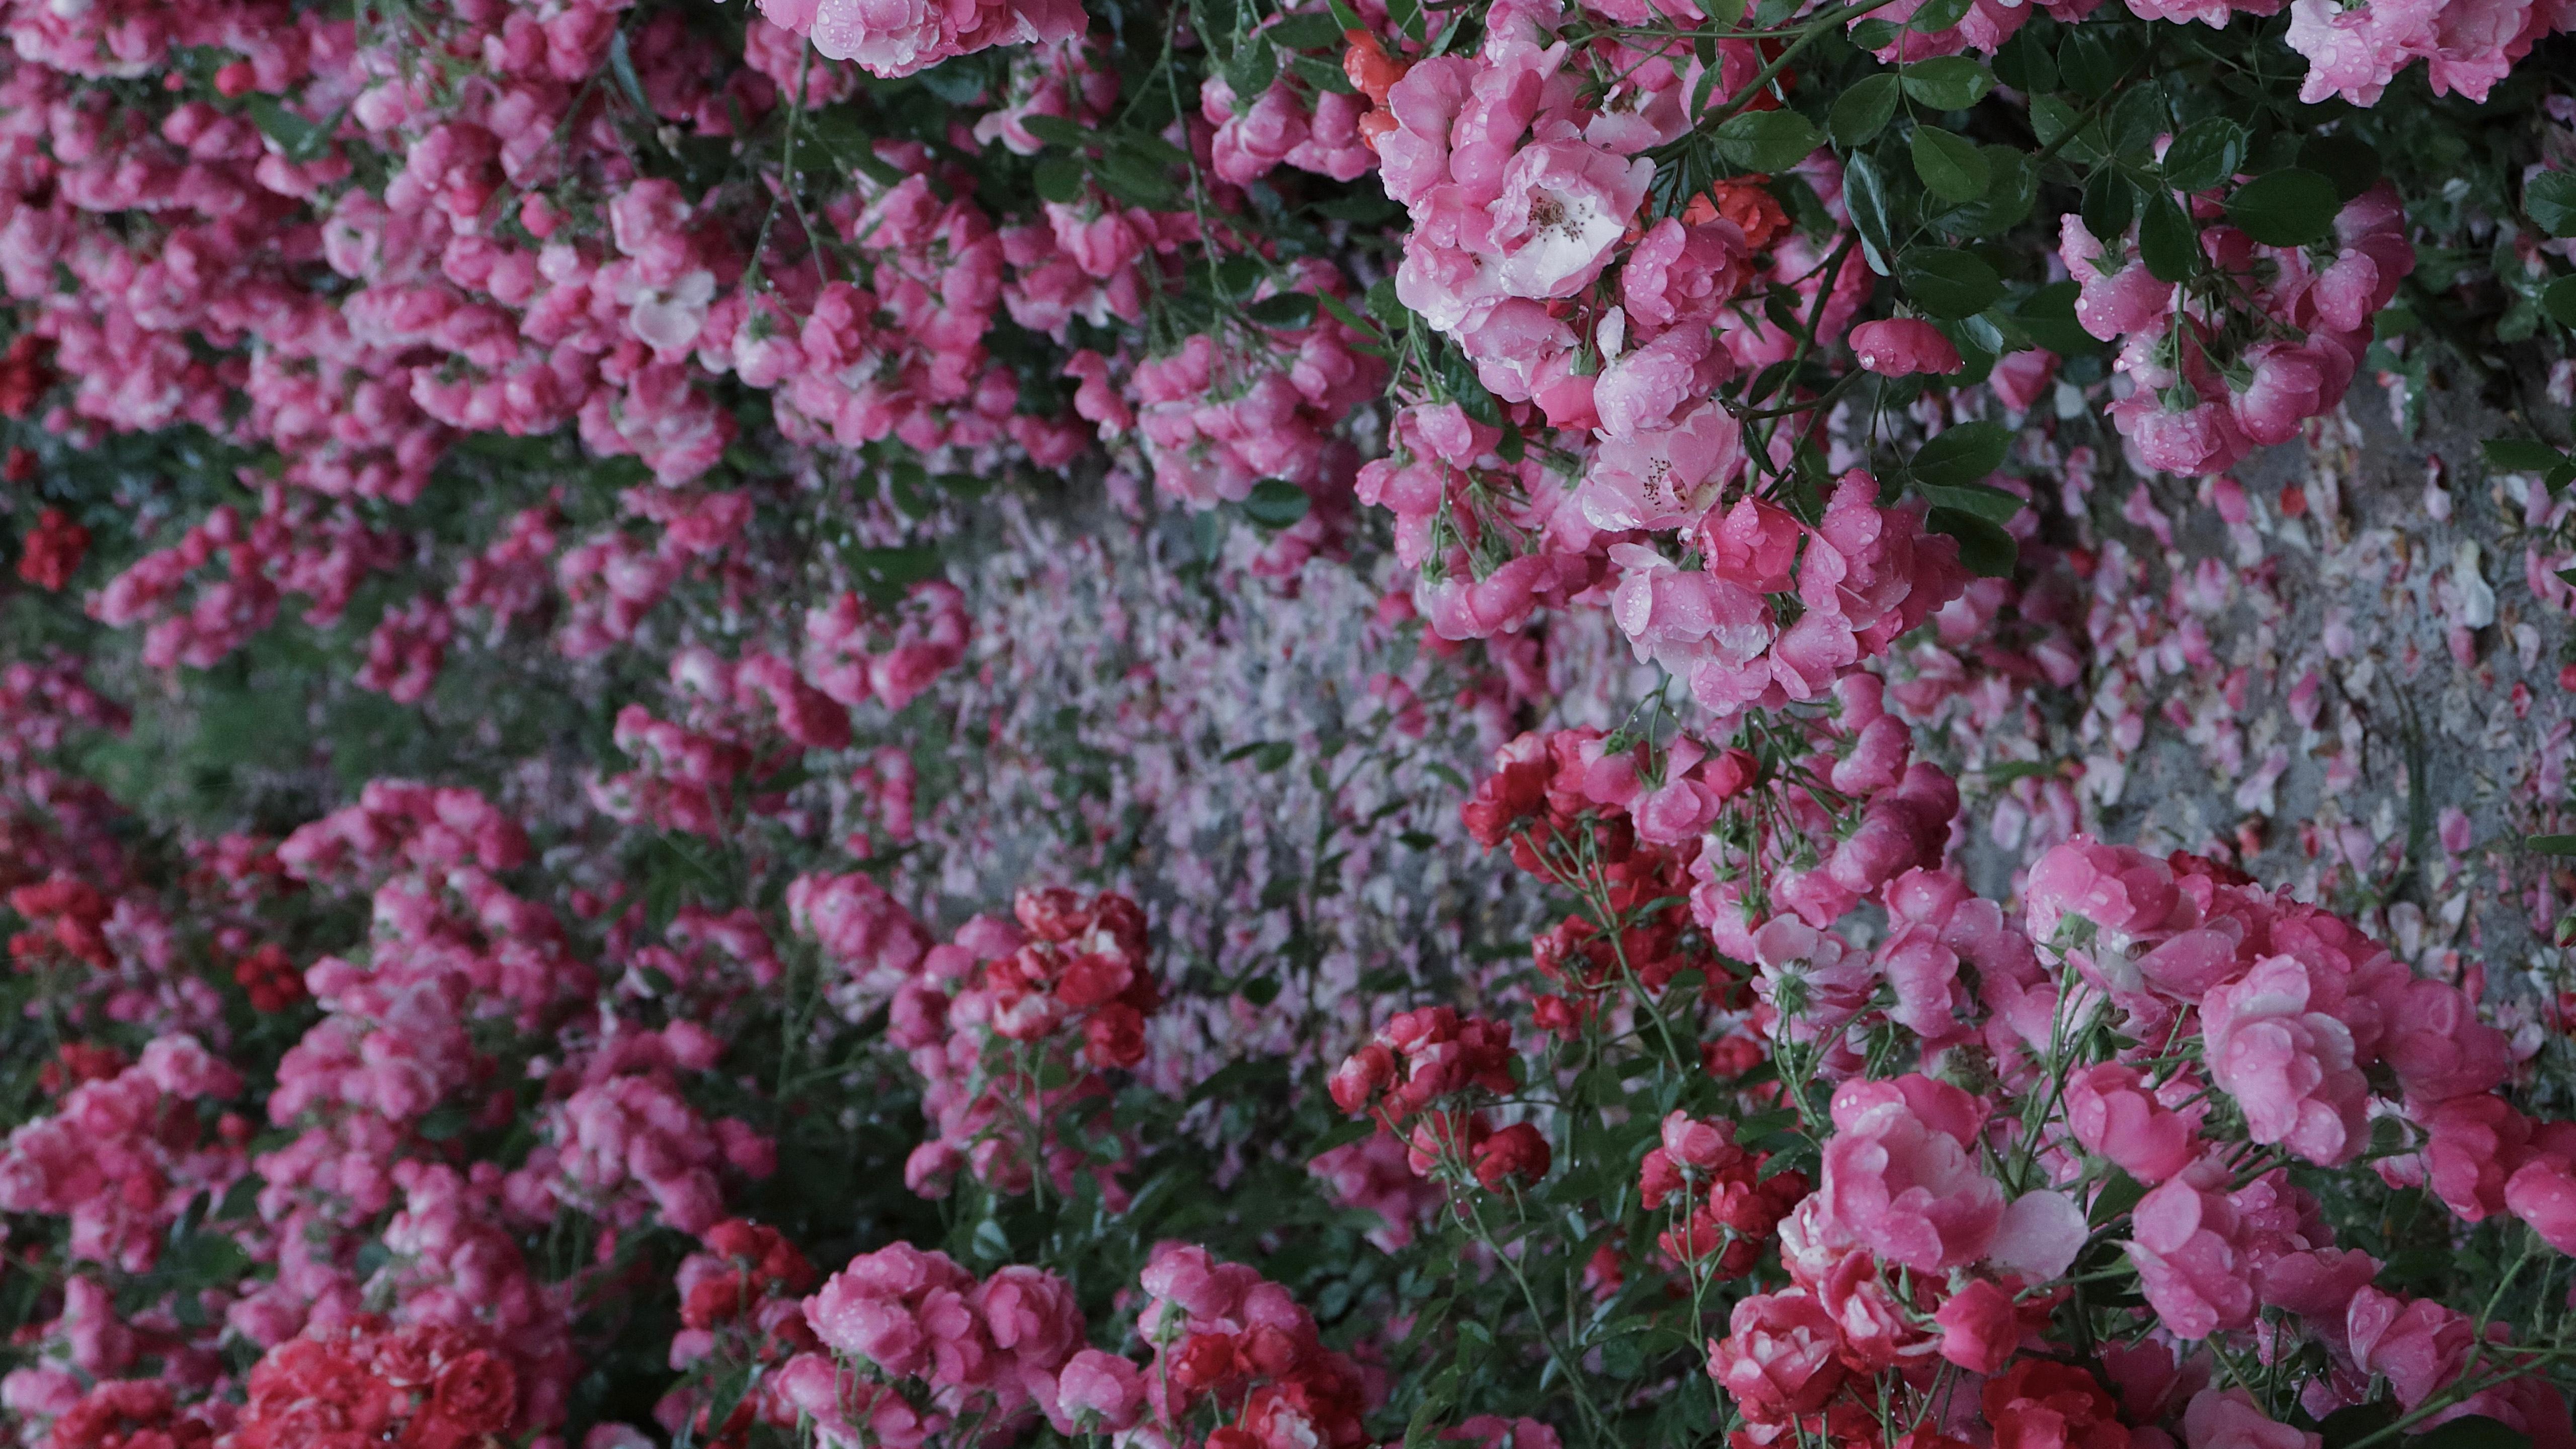 盛开的蔷薇花图片桌面壁纸 蔷薇花壁纸高清精选 三千图片网